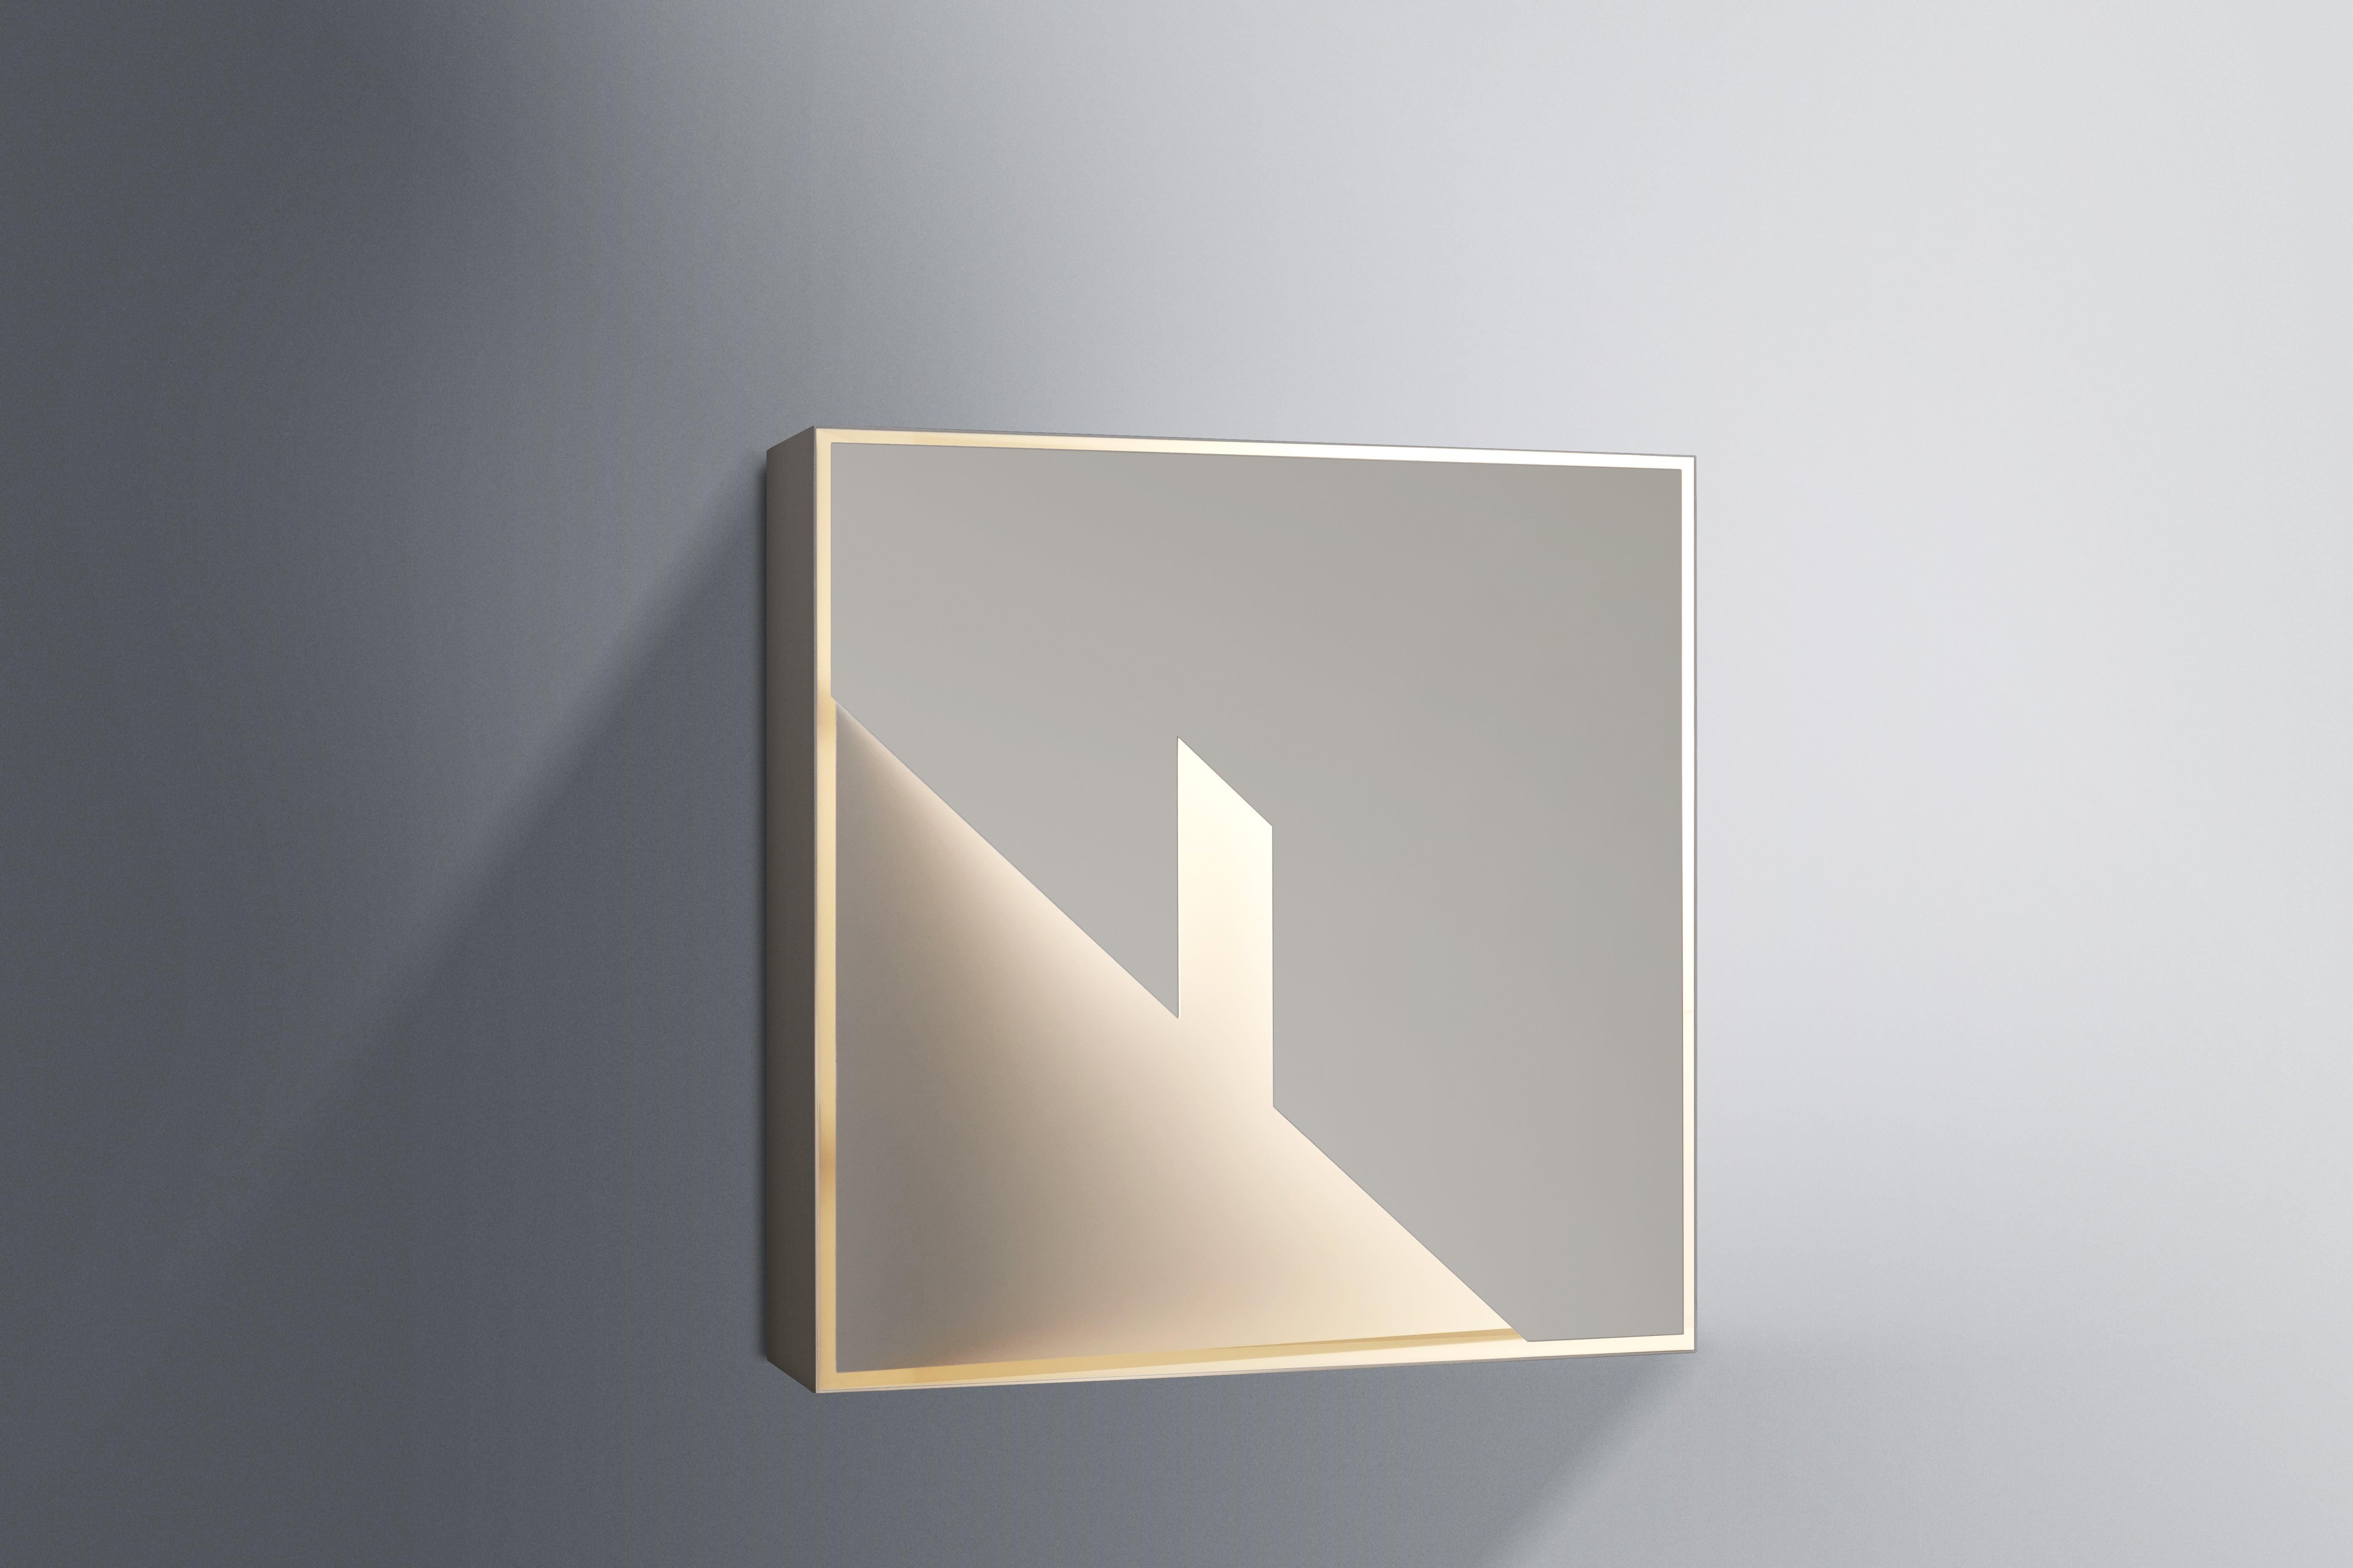 Le nouveau Screen of Light de l'artiste Massimo Uberti à la PolliceLightGallery : un projet qui réunit des designers, des architectes et des artistes contemporains influents afin de créer des lumières architecturales extraordinaires comme le sont